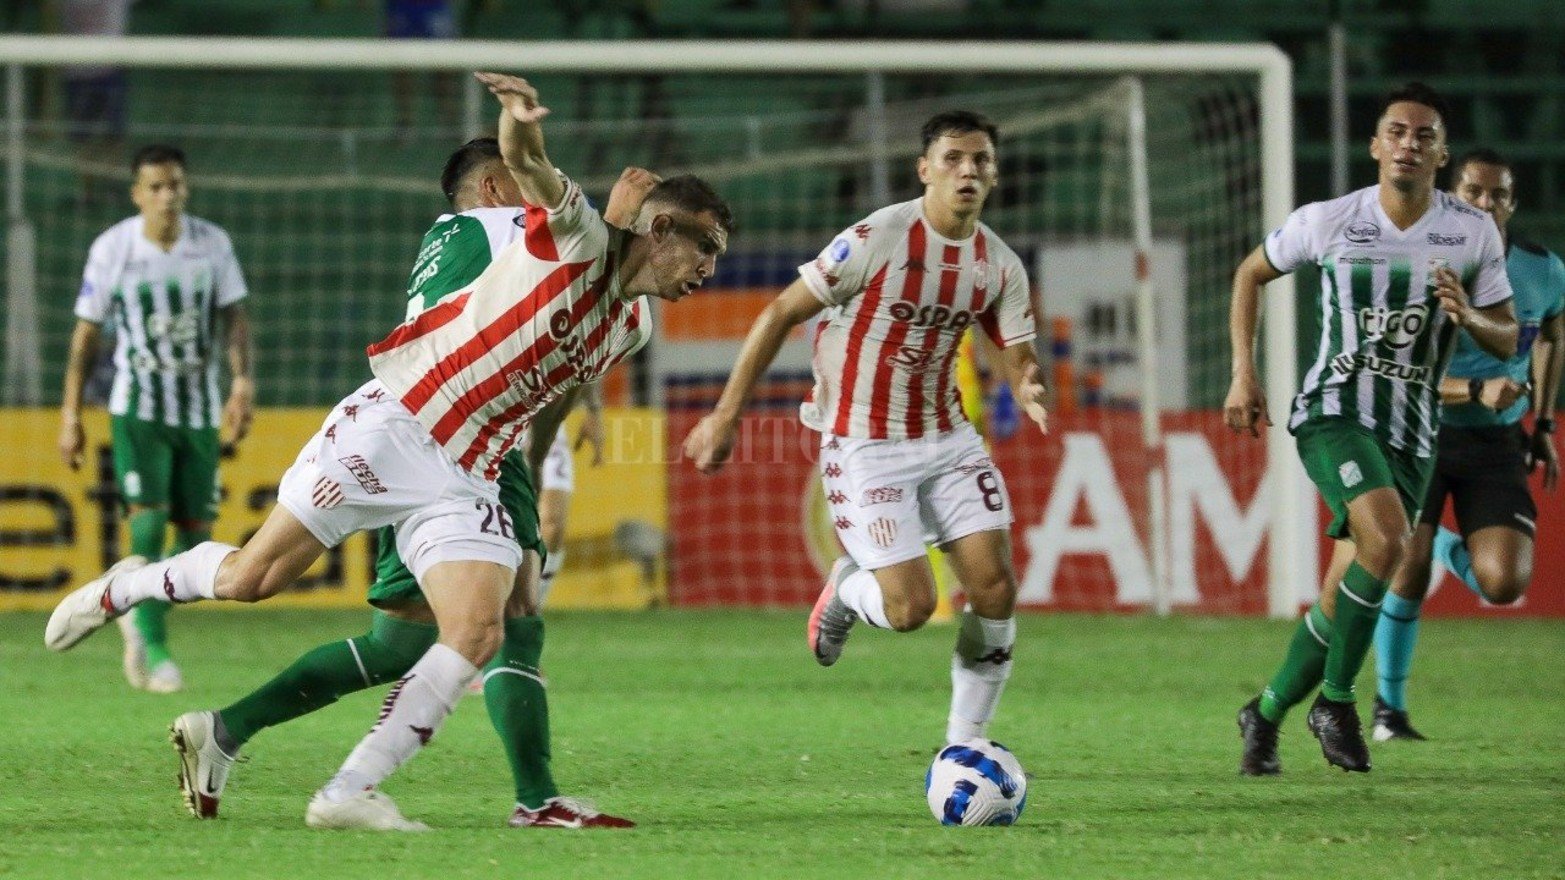 El tatengue se impuso por 3 a 1 en el estadio Ramón Aguilera Costas de la ciudad de Santa Cruz de la Sierra. Calderón, Peralta Bauer y Juárez fueron los autores de los goles.